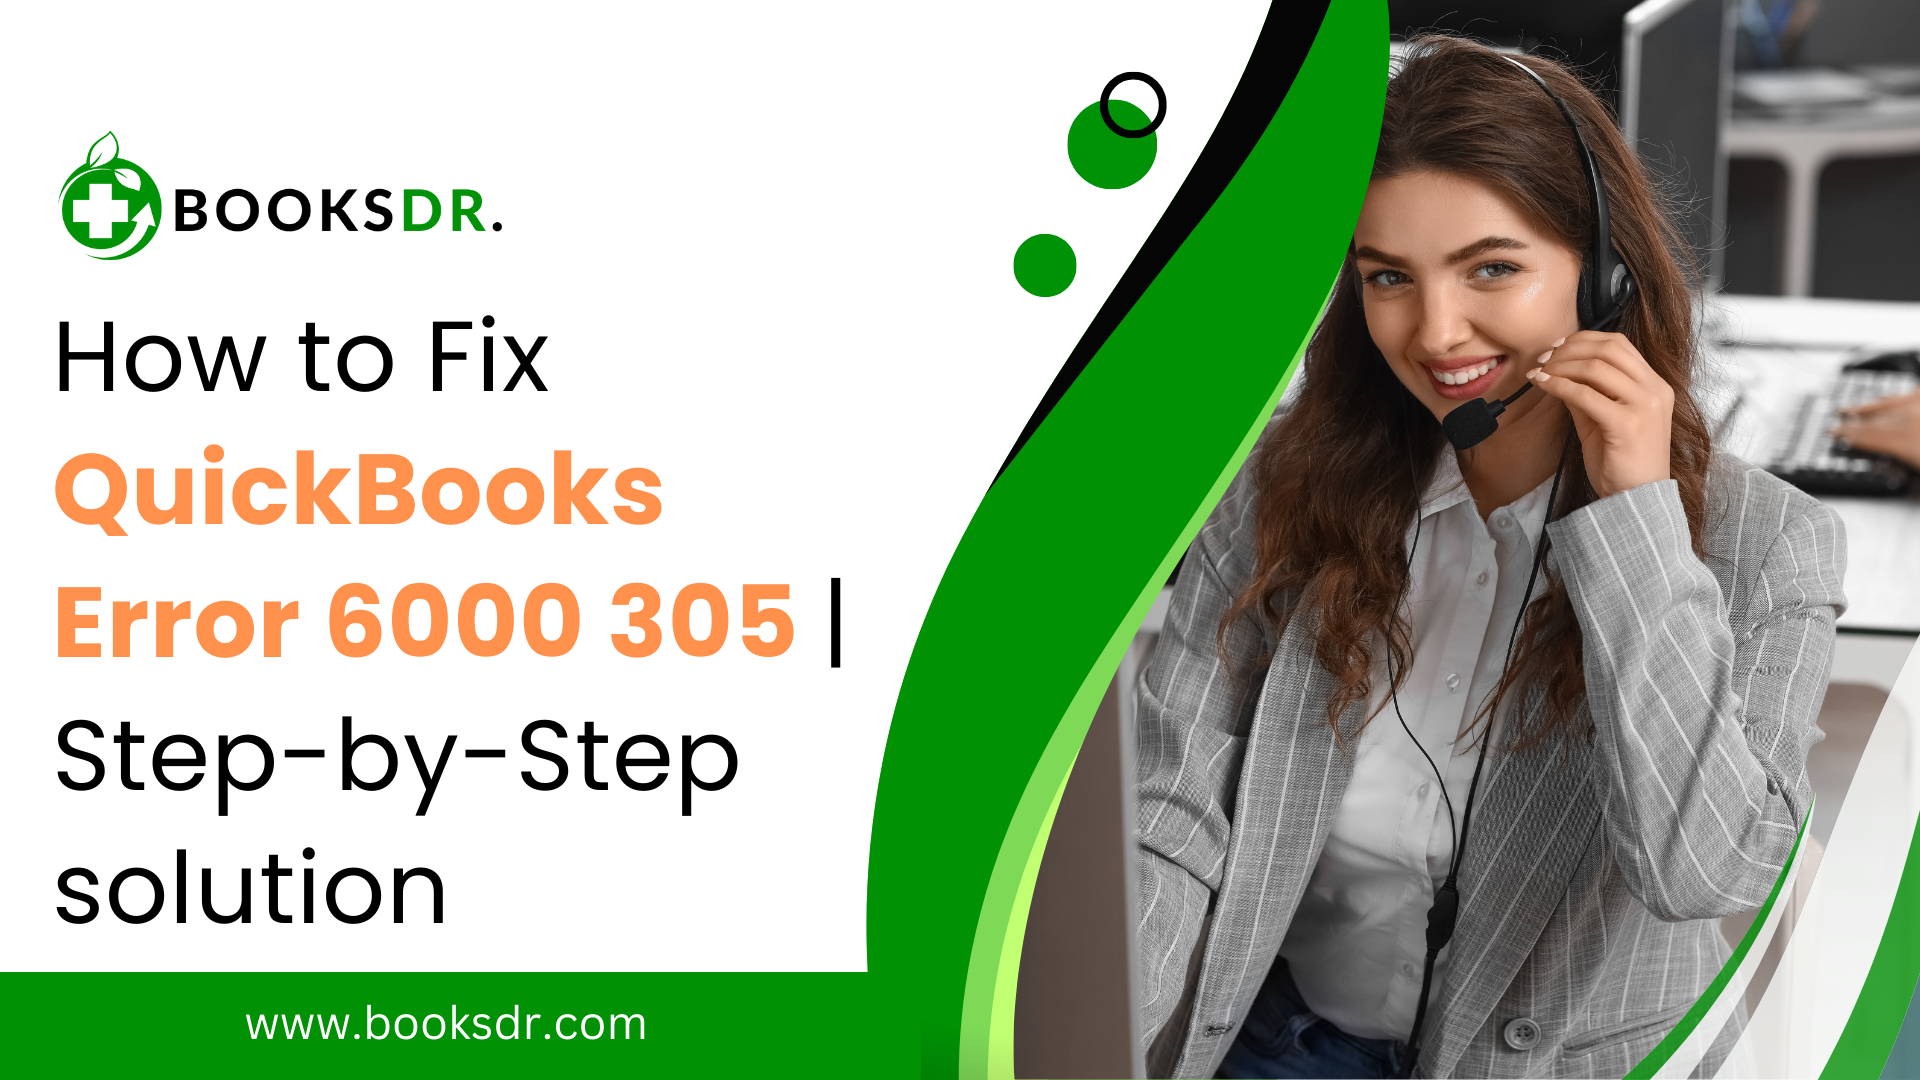 QuickBooks Error 6000 305